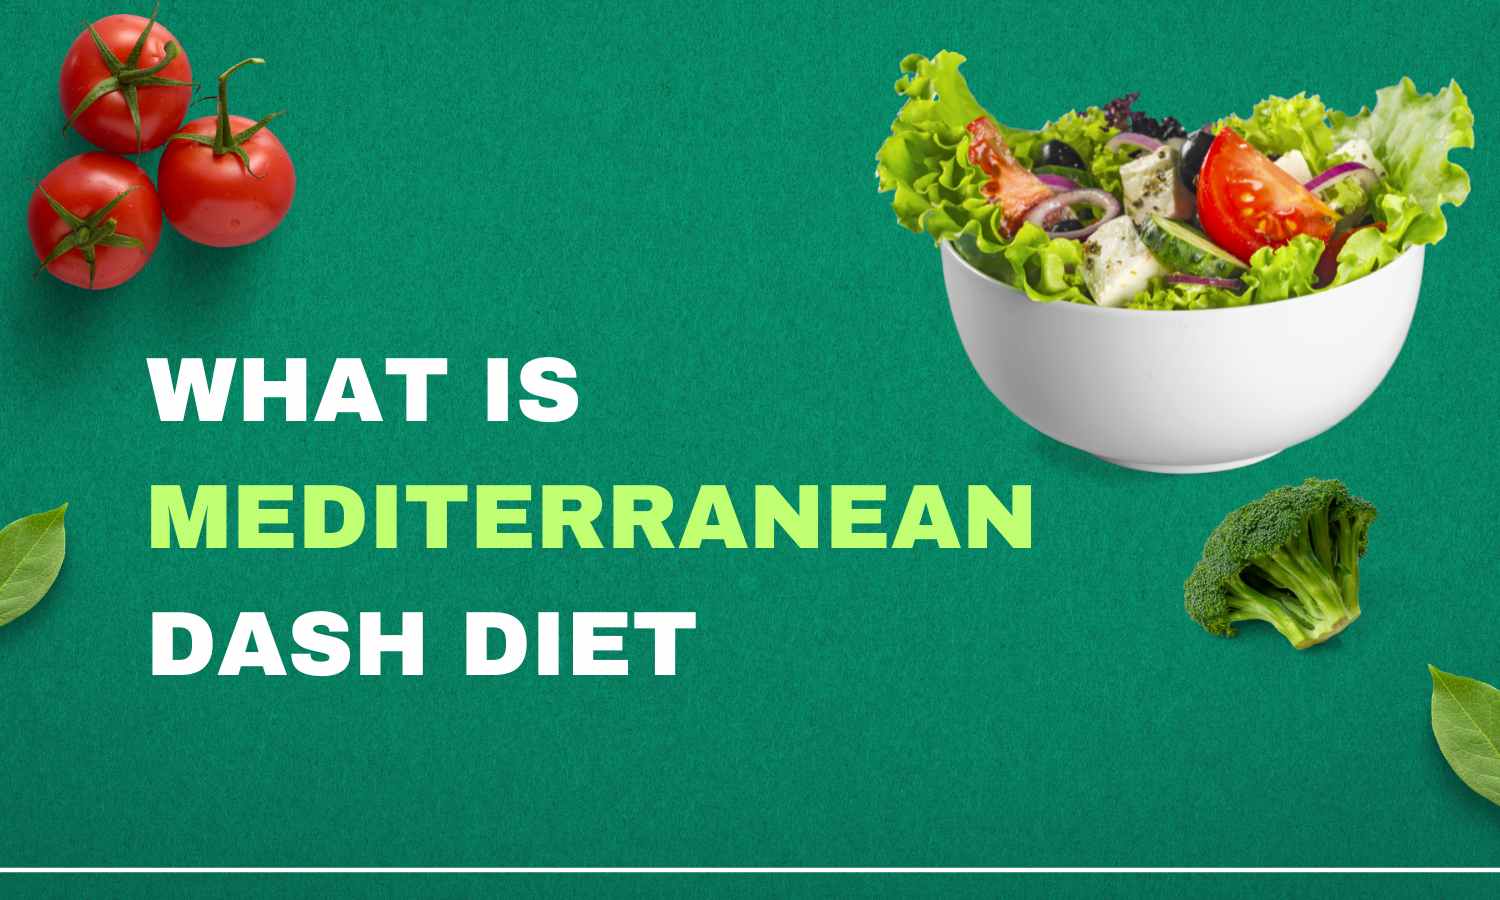 Mediterranean Dash Diet